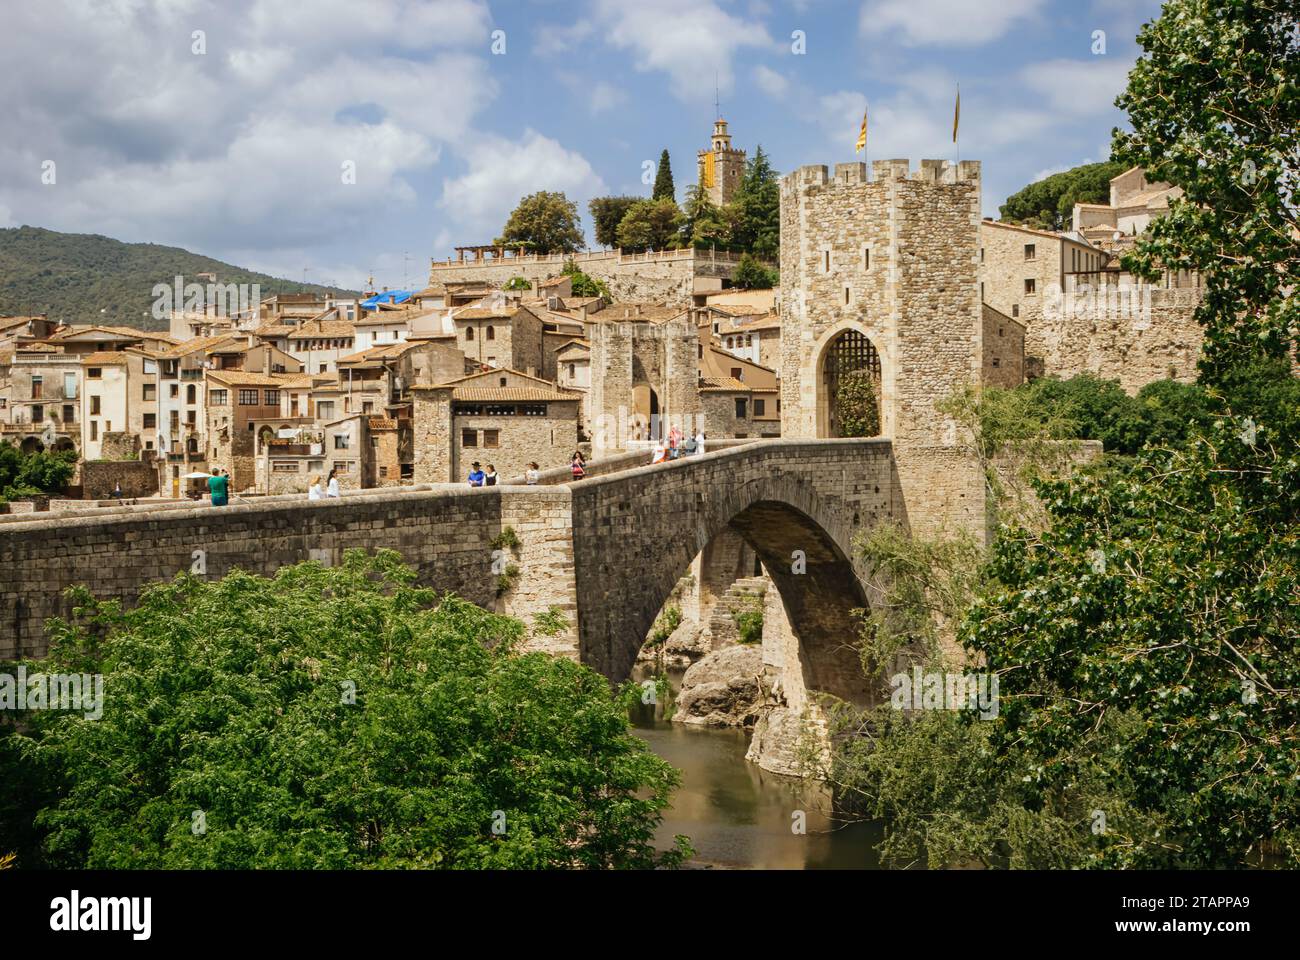 El Pont Vell, eine befestigte Brücke, die als Alte Brücke bekannt ist und den Fluss Fluvia überquert, Besalú, Girona, Katalonien, Spanien Stockfoto